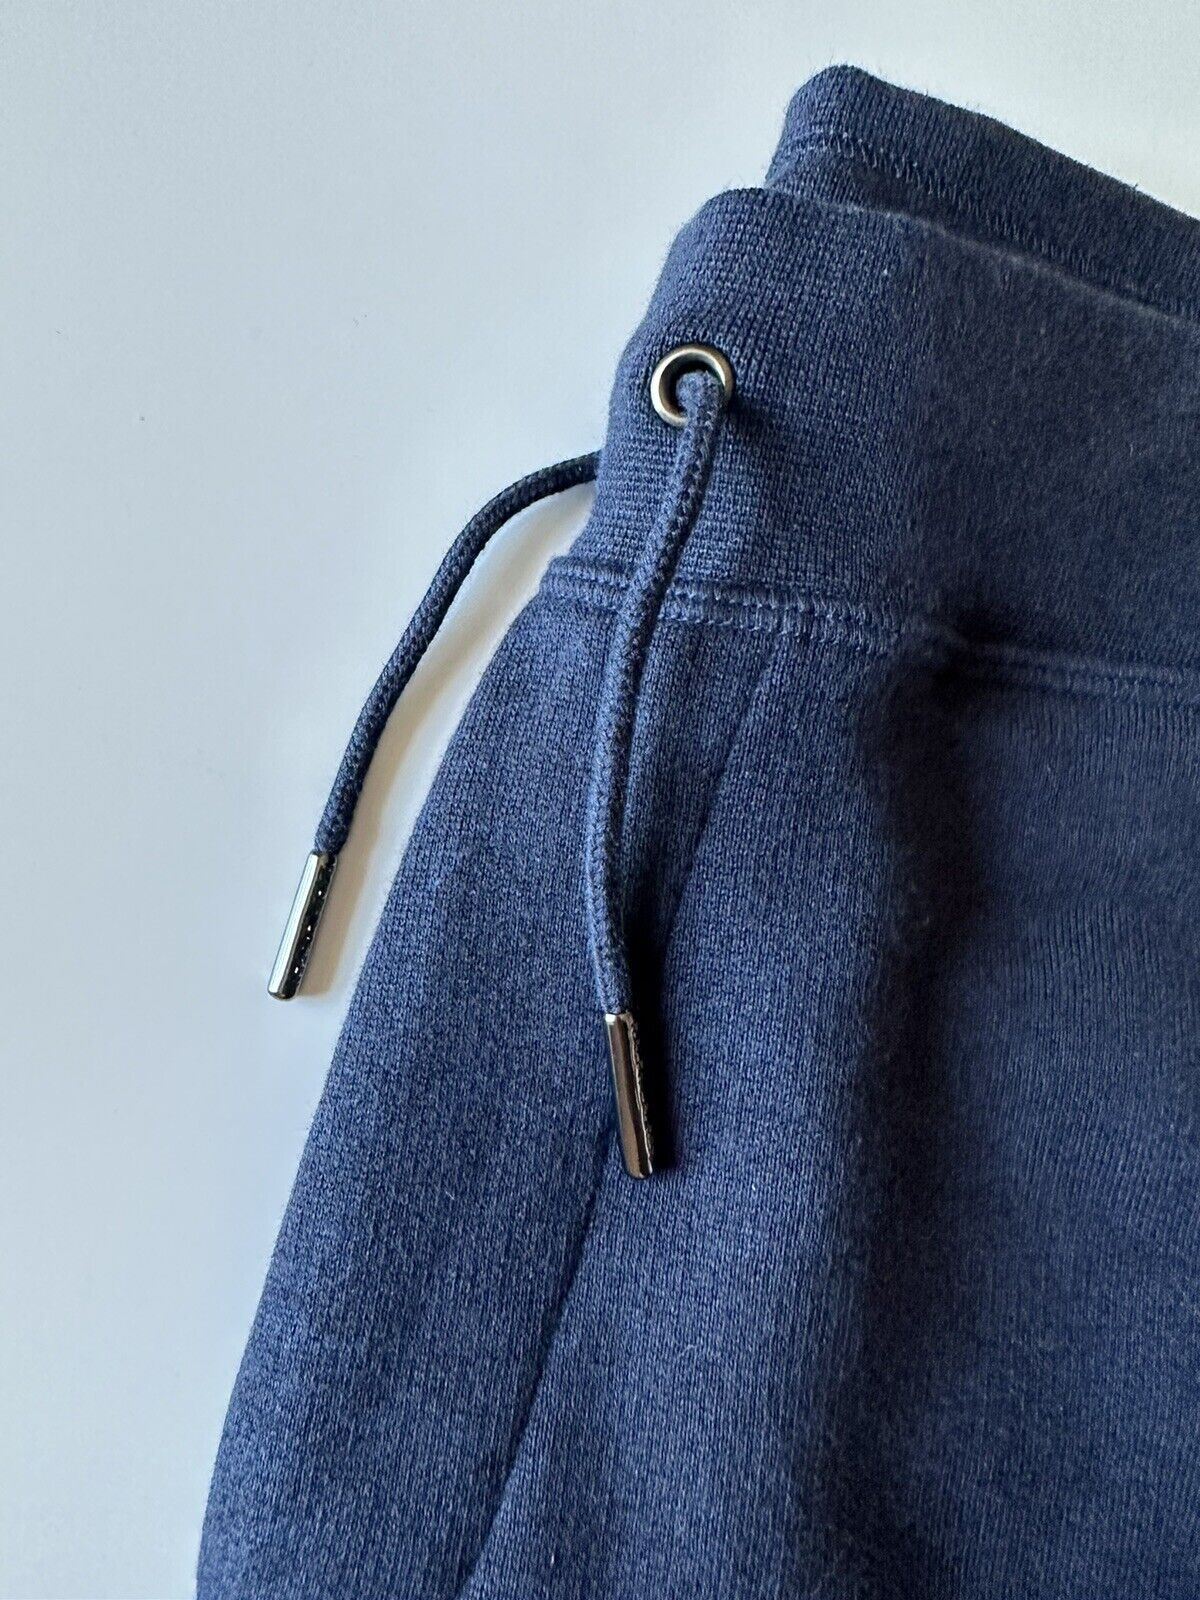 Повседневные синие брюки Ralph Lauren Purple Label, большие размеры (размер 34 дюйма), NWT, 395 долларов США. 